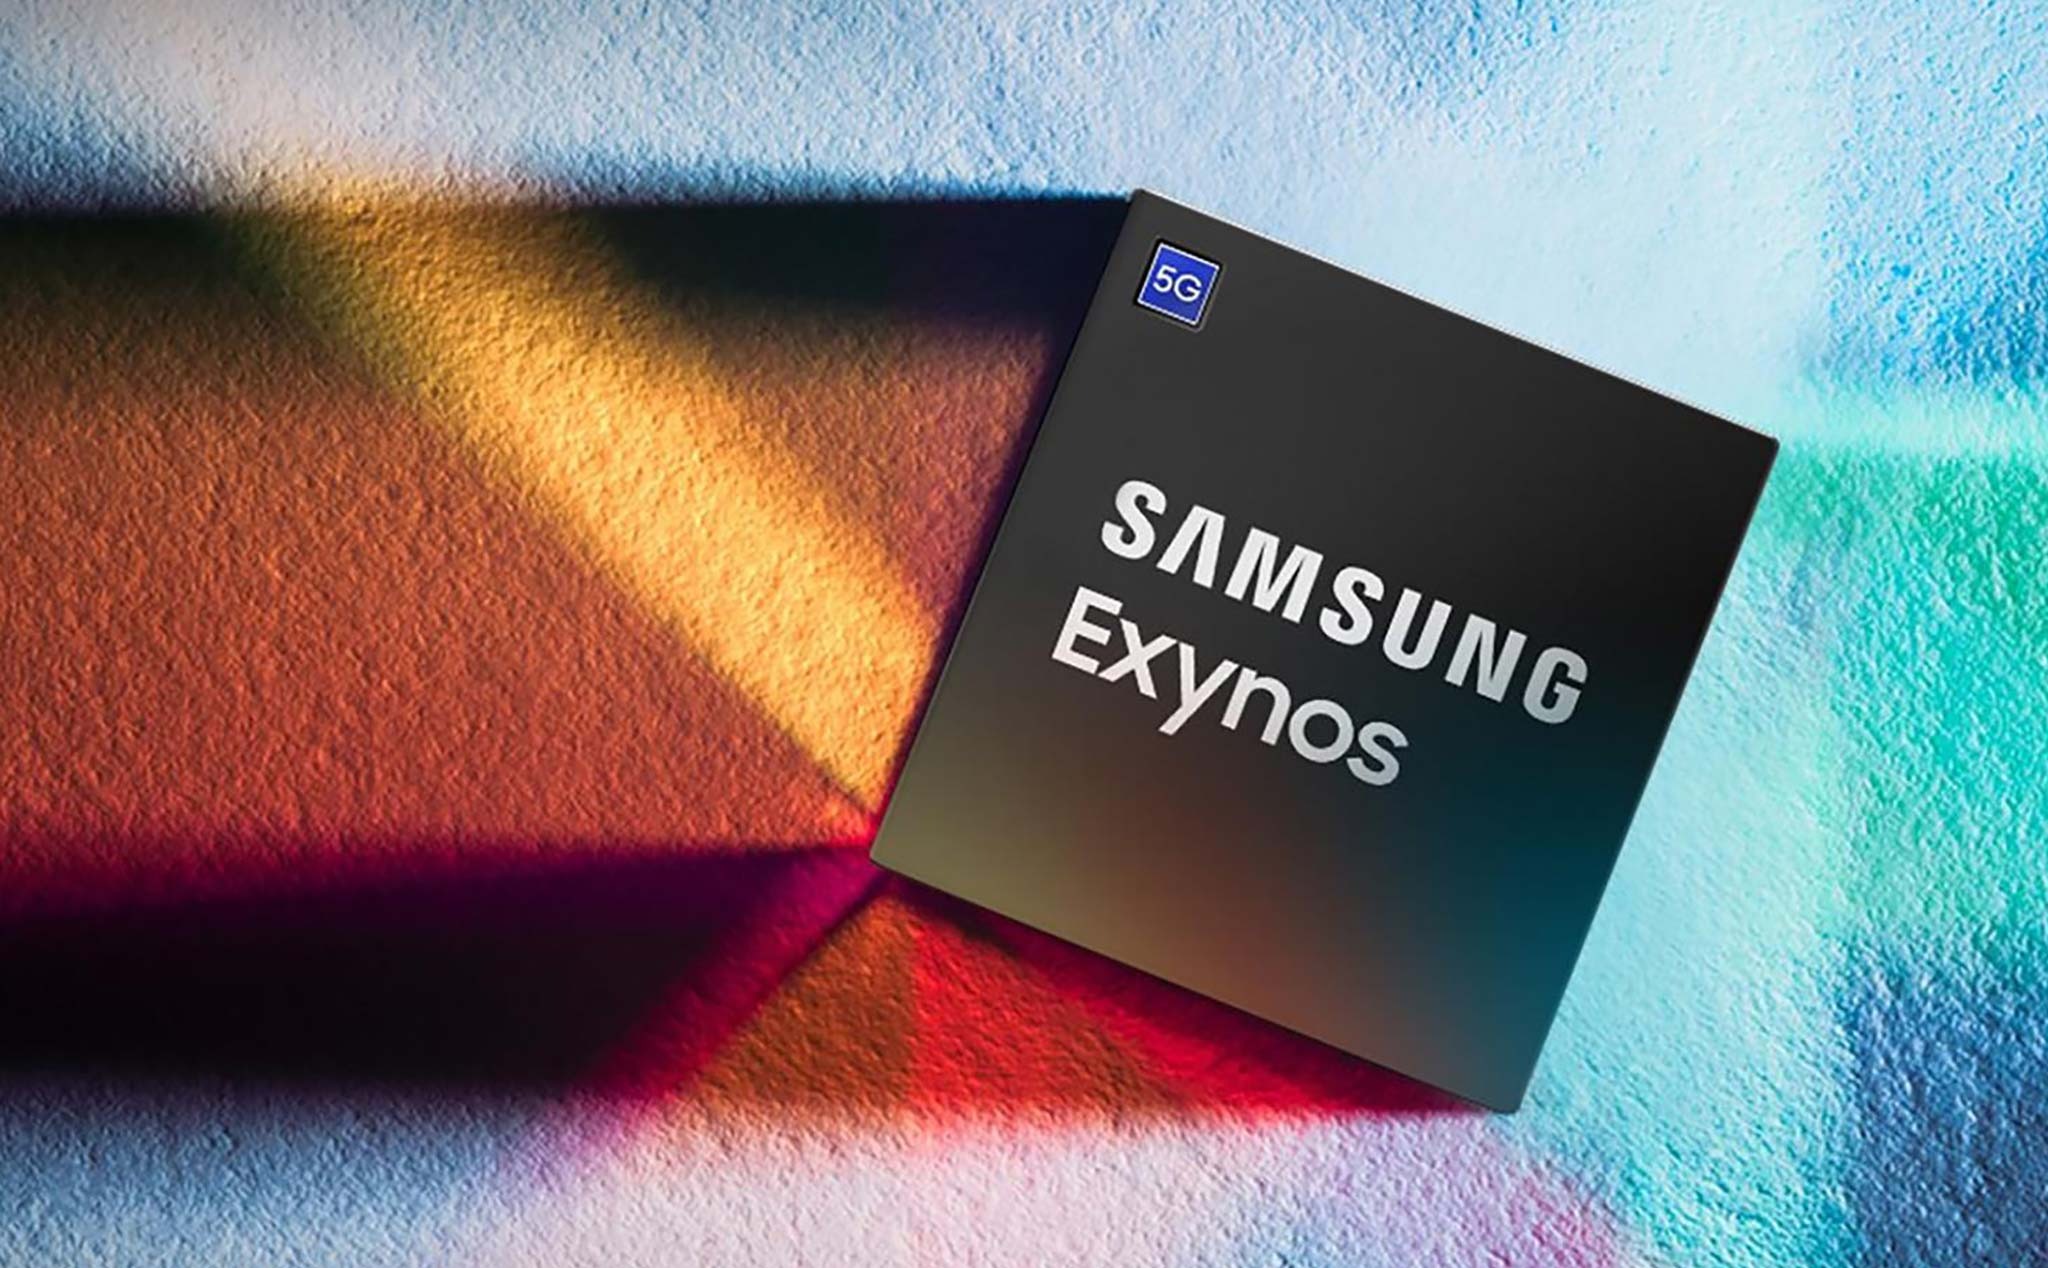 Chip Exynos 2400 mới sẽ được trang bị CPU 10 nhân